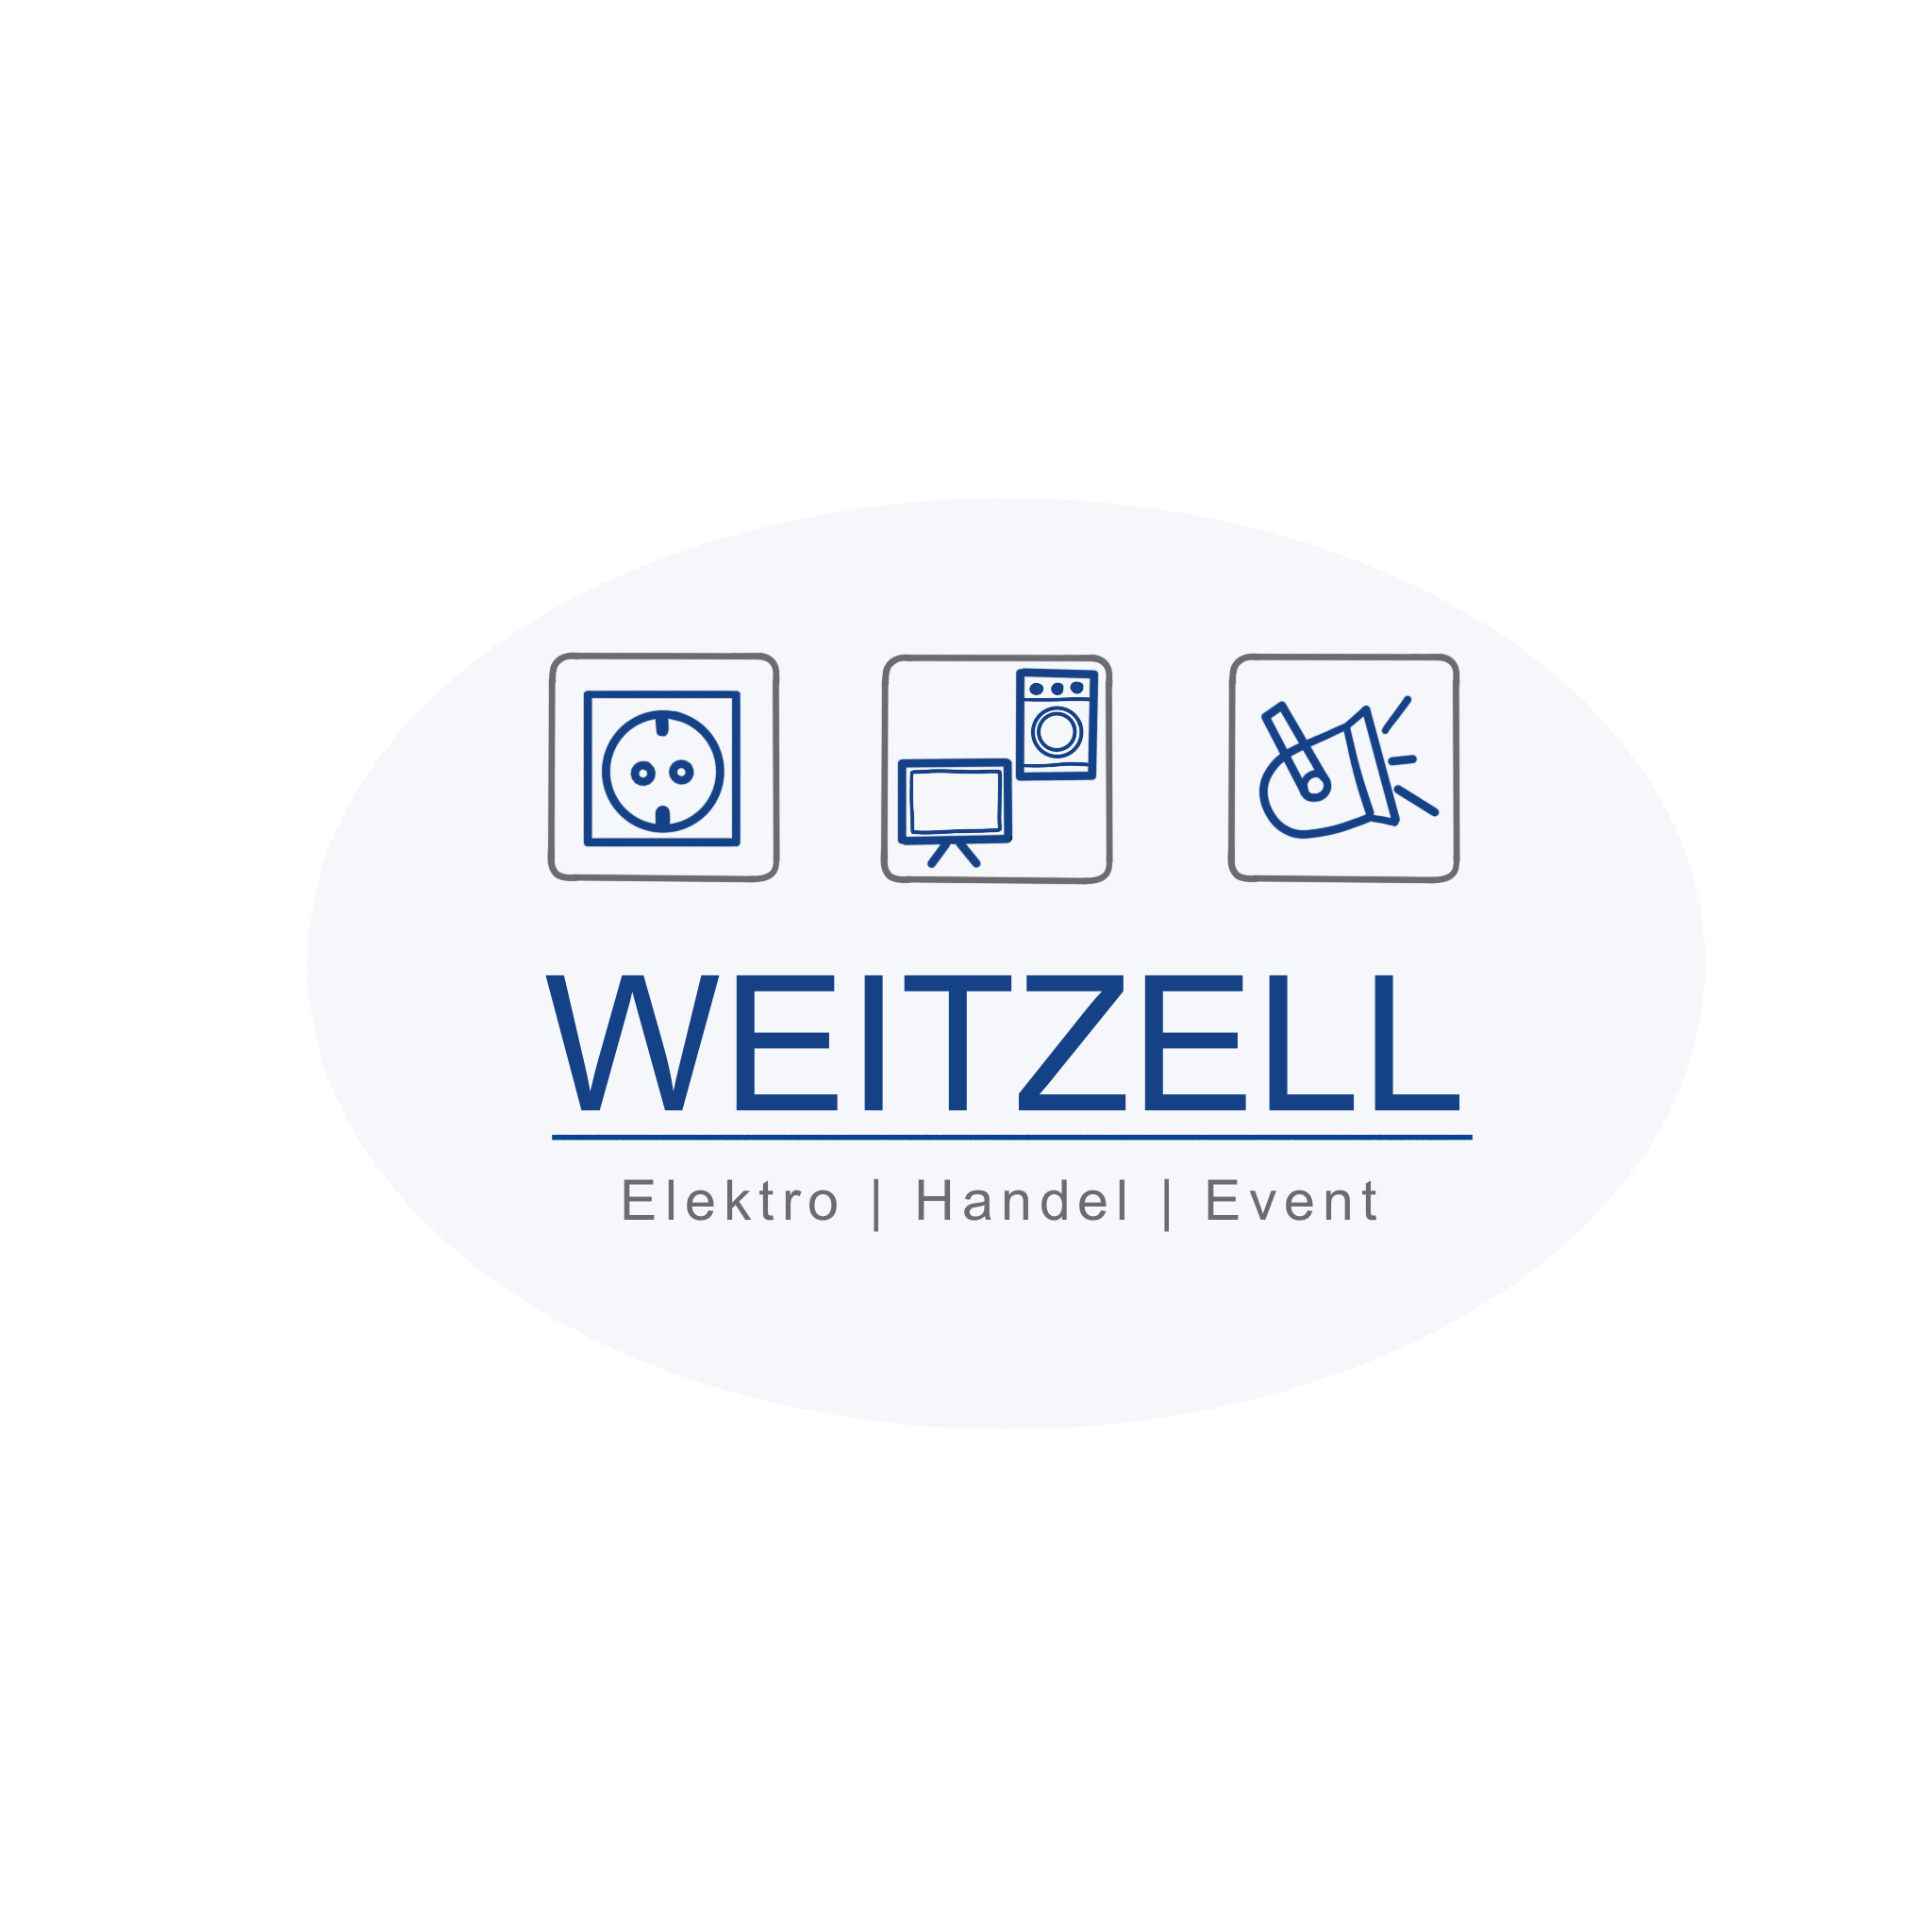 Weitzell Elektro / Handel / Event